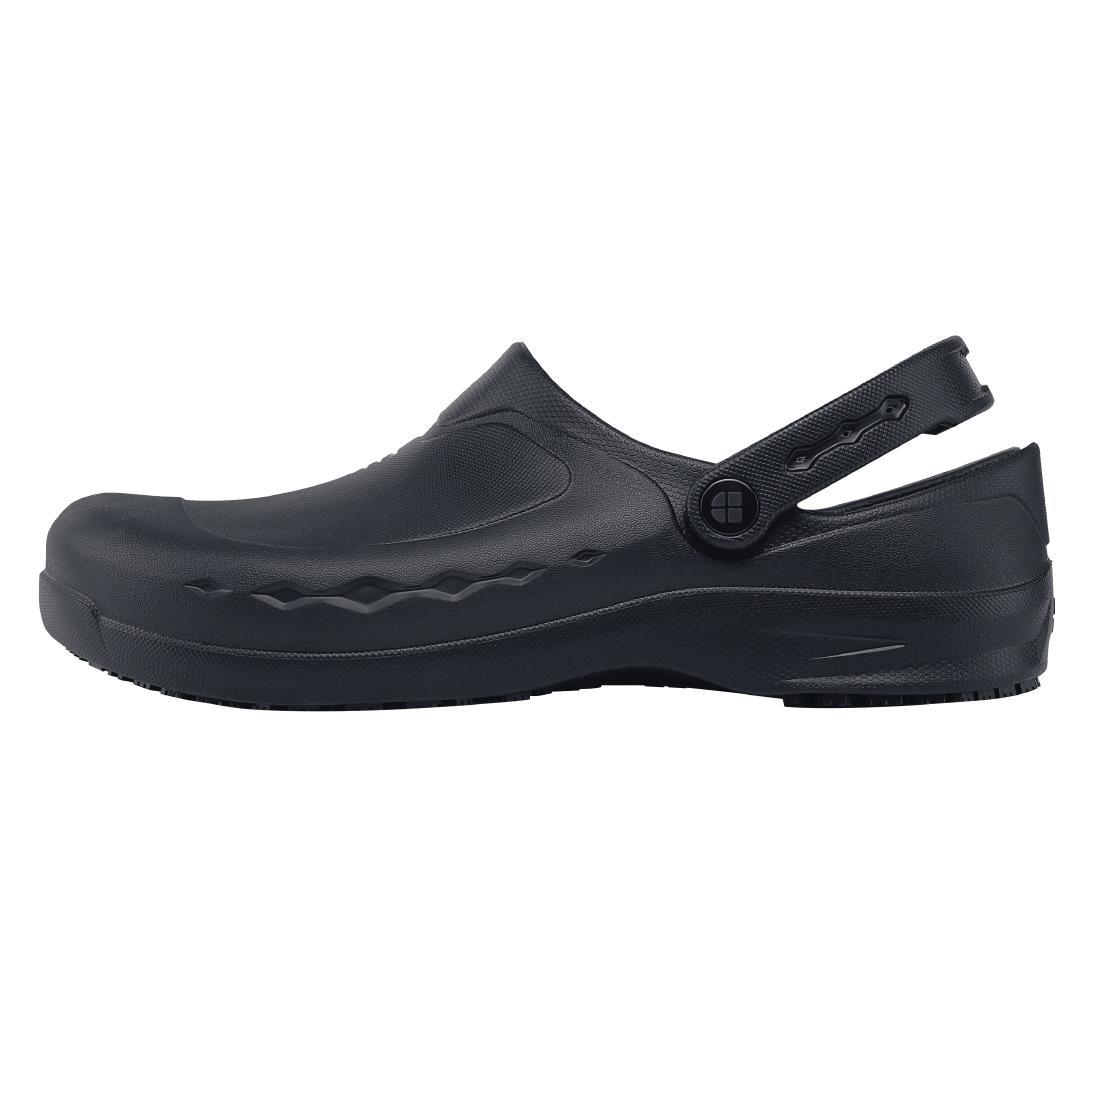 Shoes for Crews Zinc Clogs Black Size 44 - BB569-44  - 1